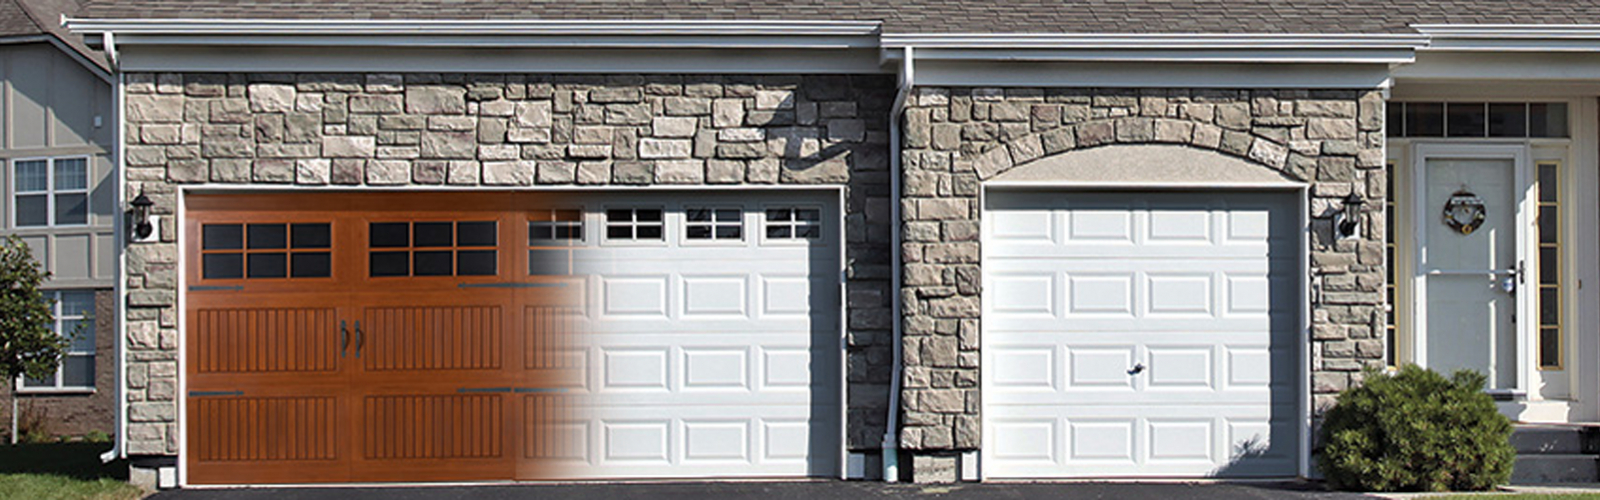 Overhead Door Company Of Conroe Garage Door Sales And Repair in size 1600 X 500